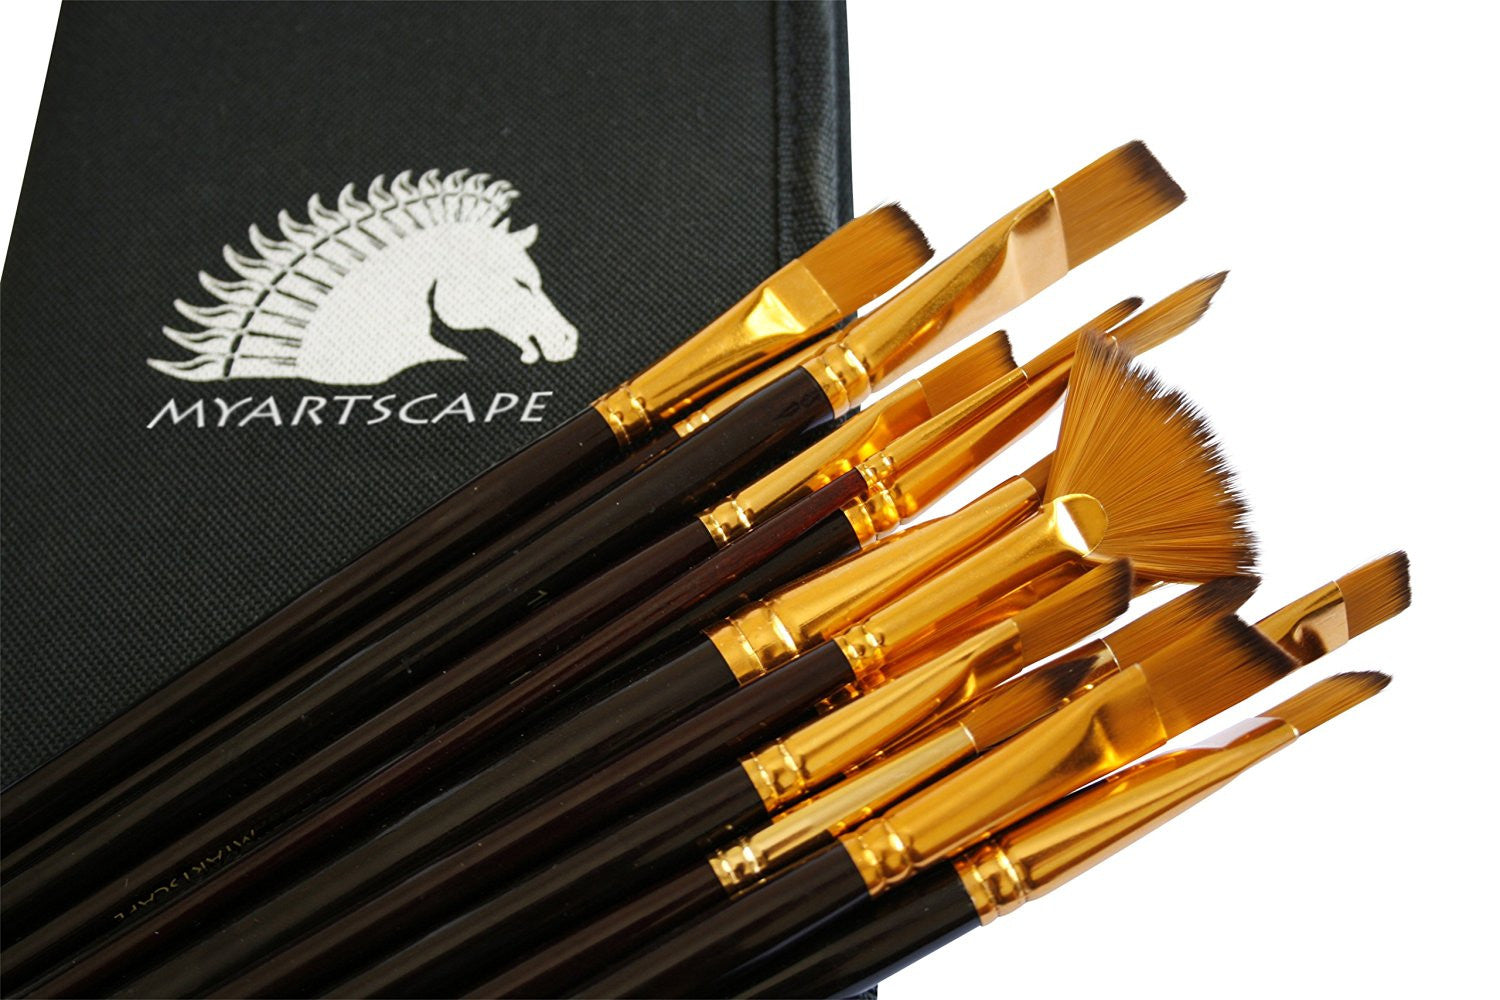 Paint Brushes - 15 Pc Brush Set, Long Handle Artist Paintbrushes with  Travel Holder & Free Gift Box